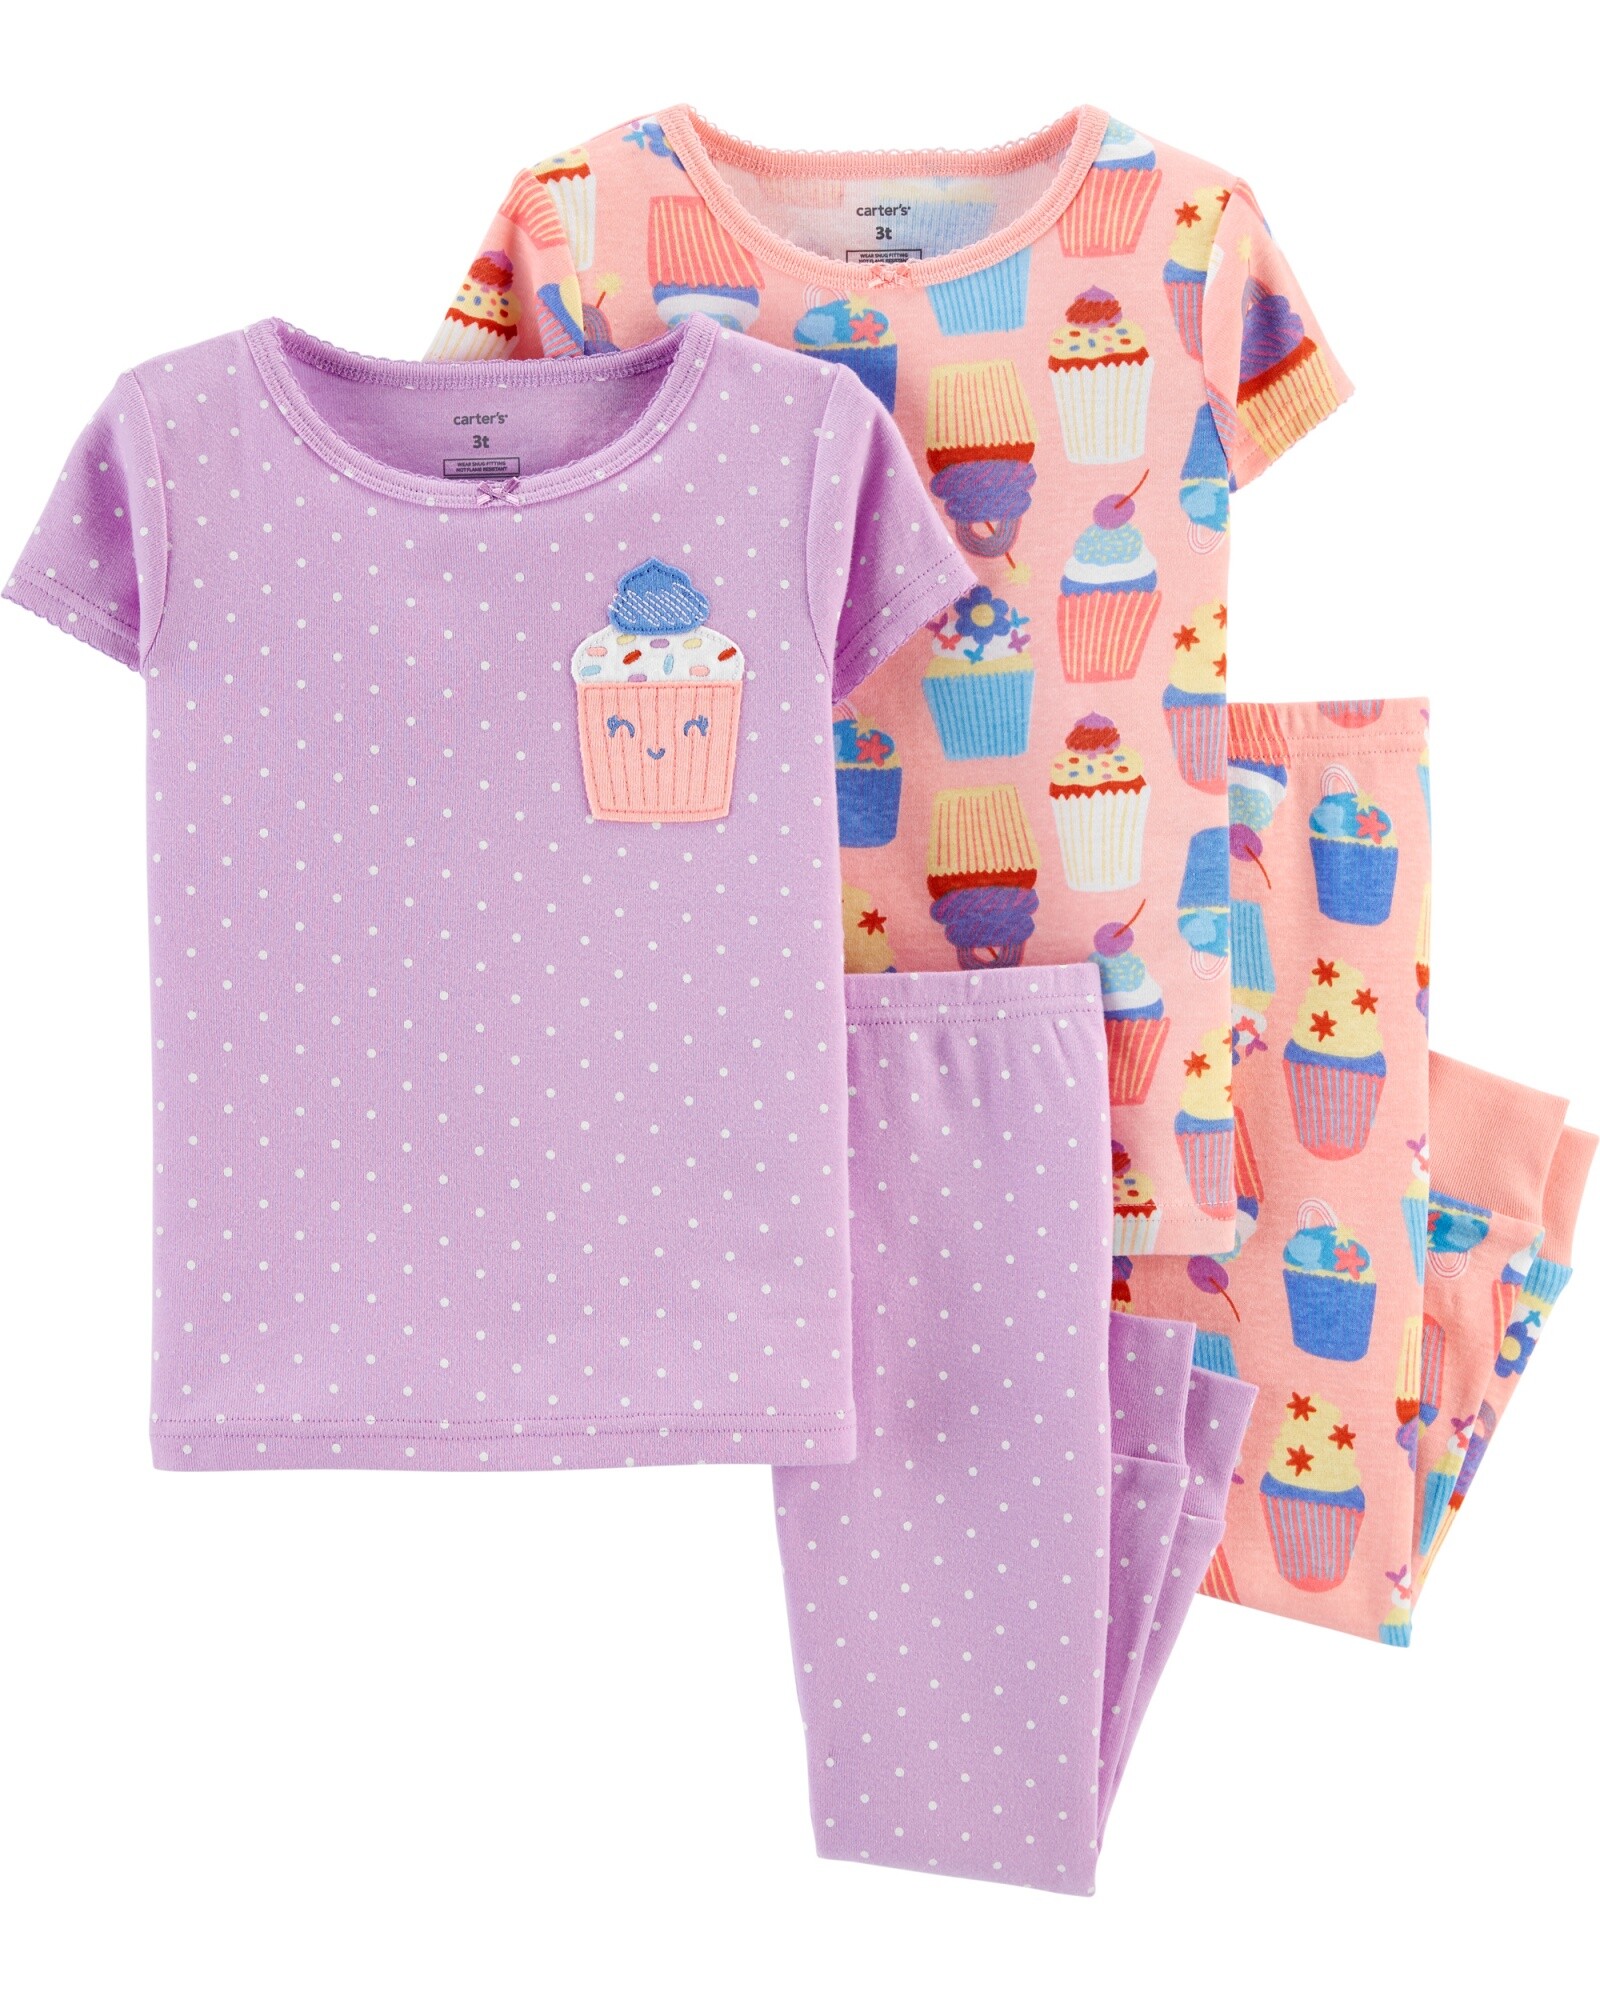 Pijama cuatro piezas dos remeras manga corta y dos pantalones cupcakes algodón Sin color